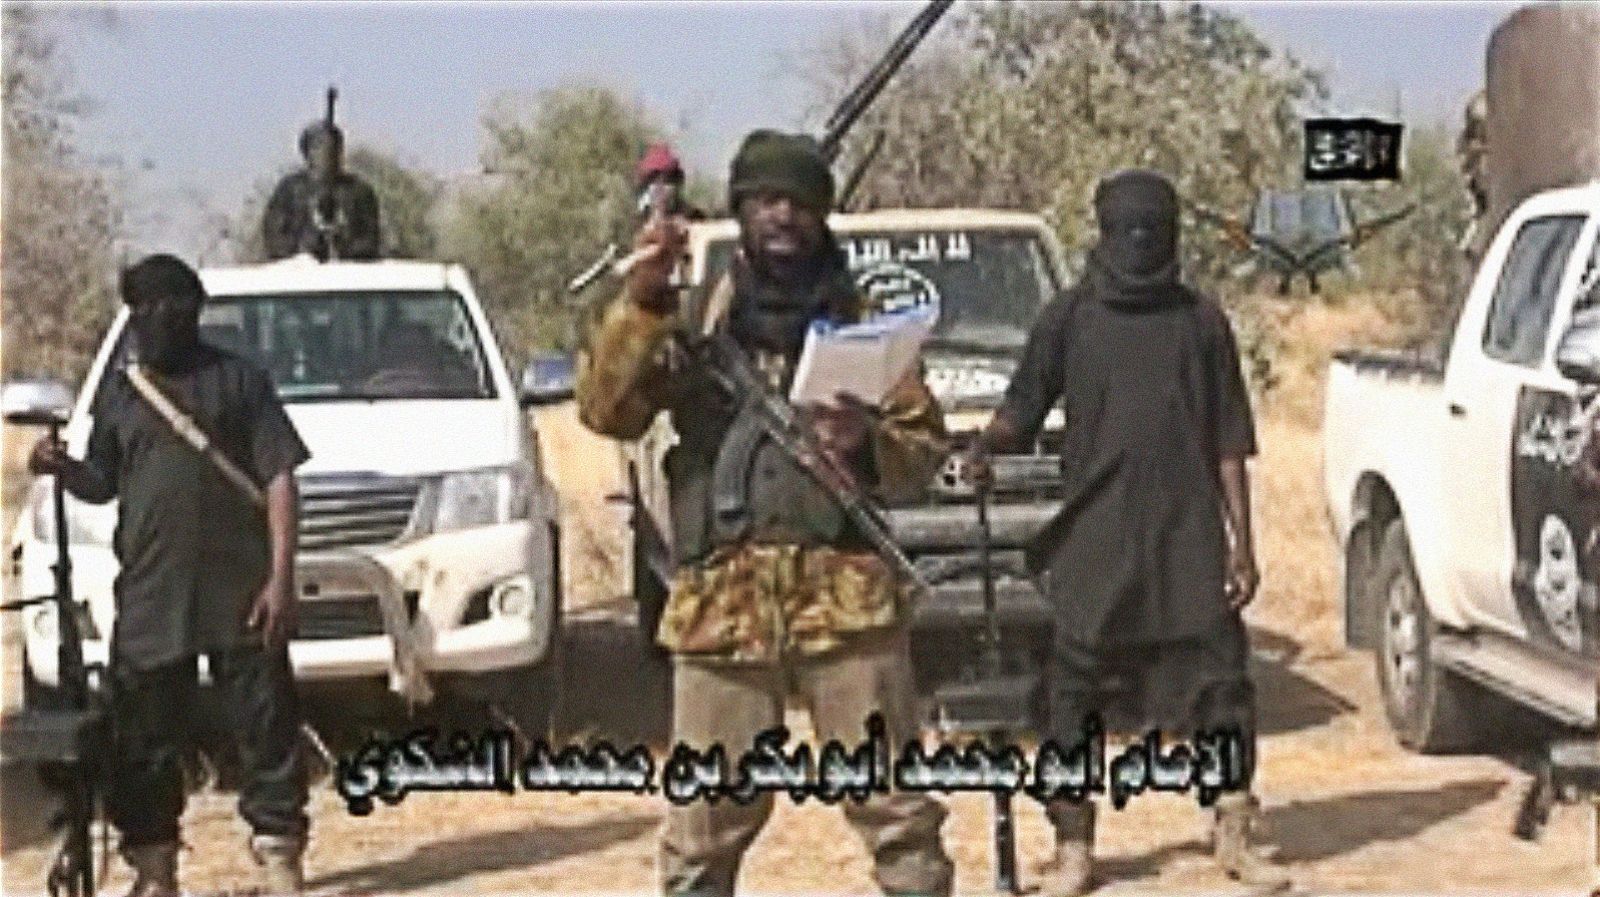 Captura del vídeo obtenido por AFP en el que el supuesto líder de Boko Haram reivindica el ataque de Baga.